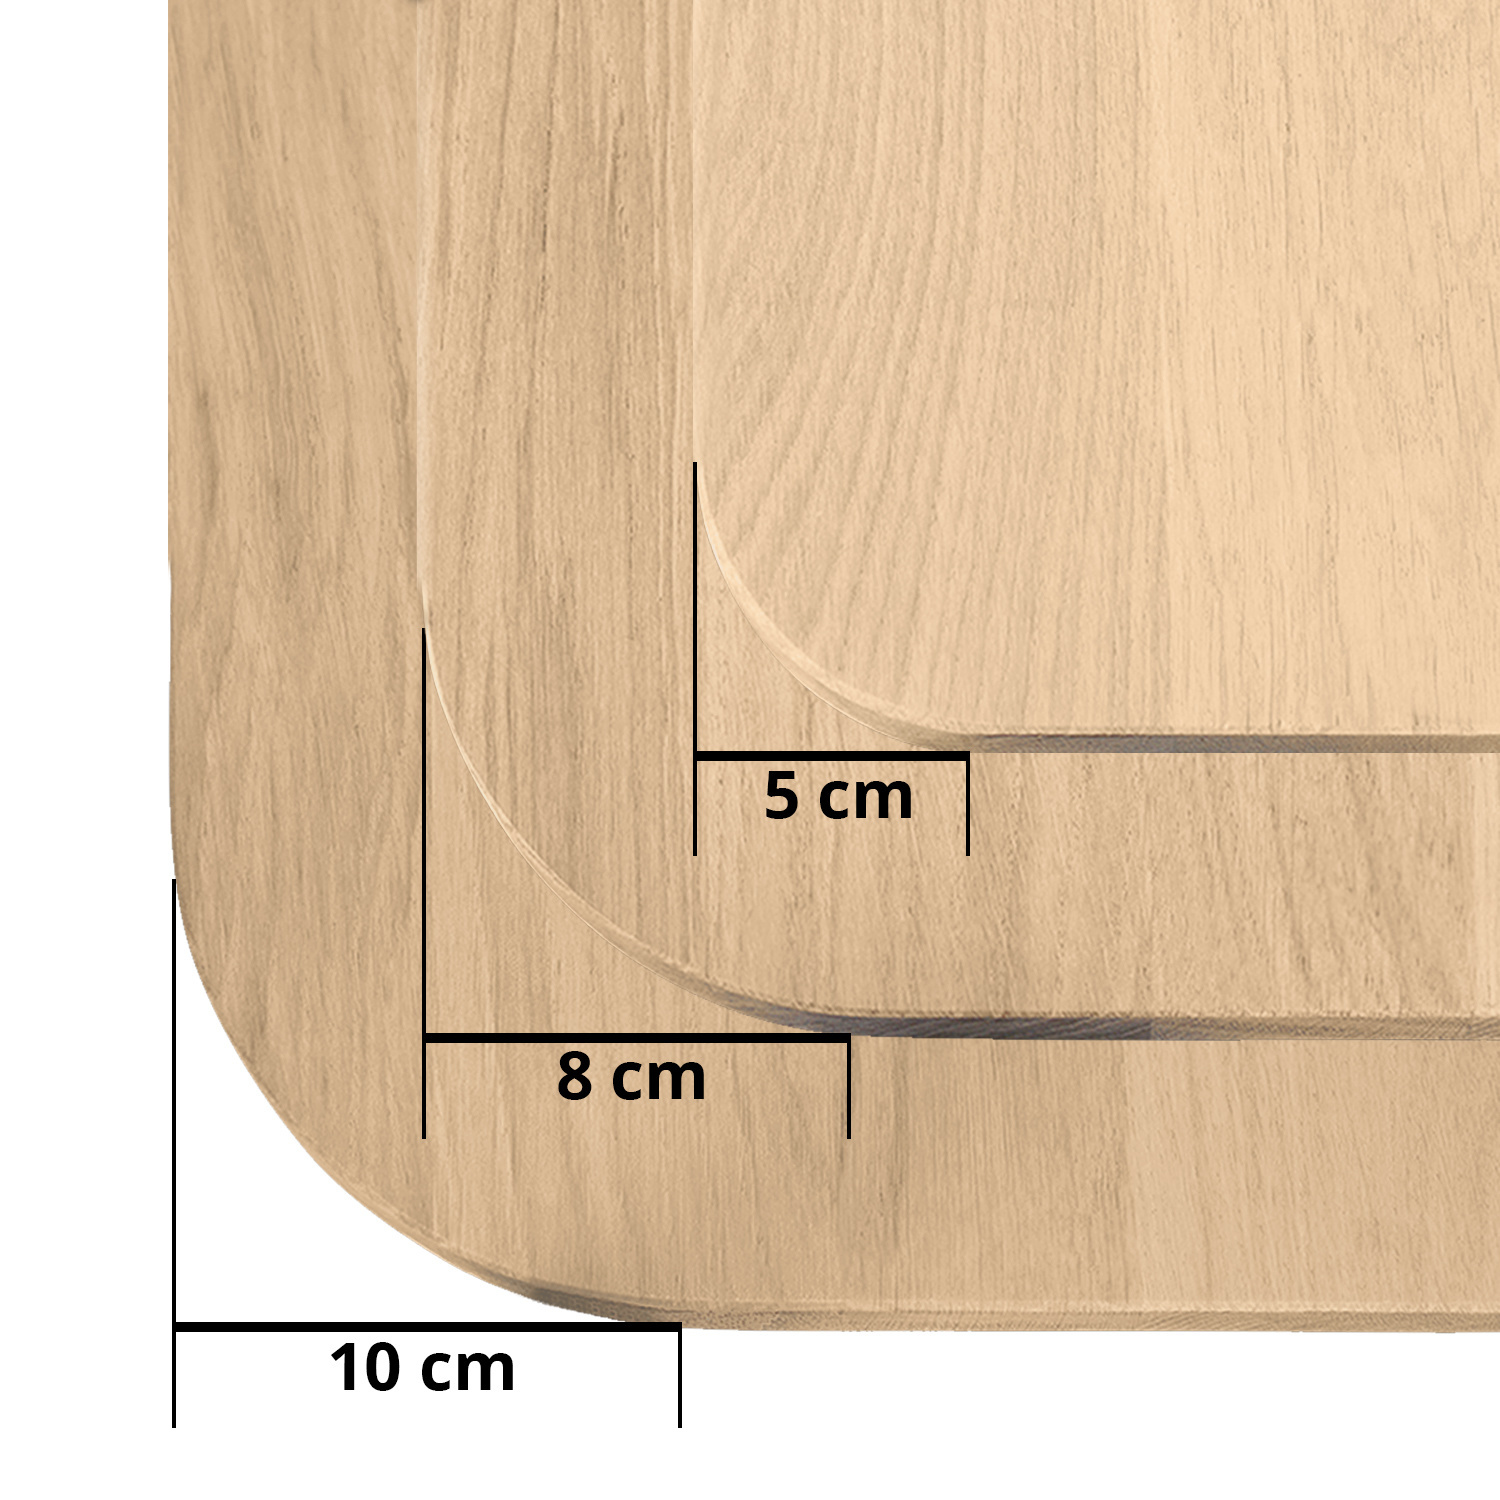  Eiken tafelblad met ronde hoeken op maat - 2,7 cm dik (1-laag) - foutvrij Europees eikenhout - met brede lamellen (circa 10-12 cm) - verlijmd kd 8-12% - 50-120x50-248 cm